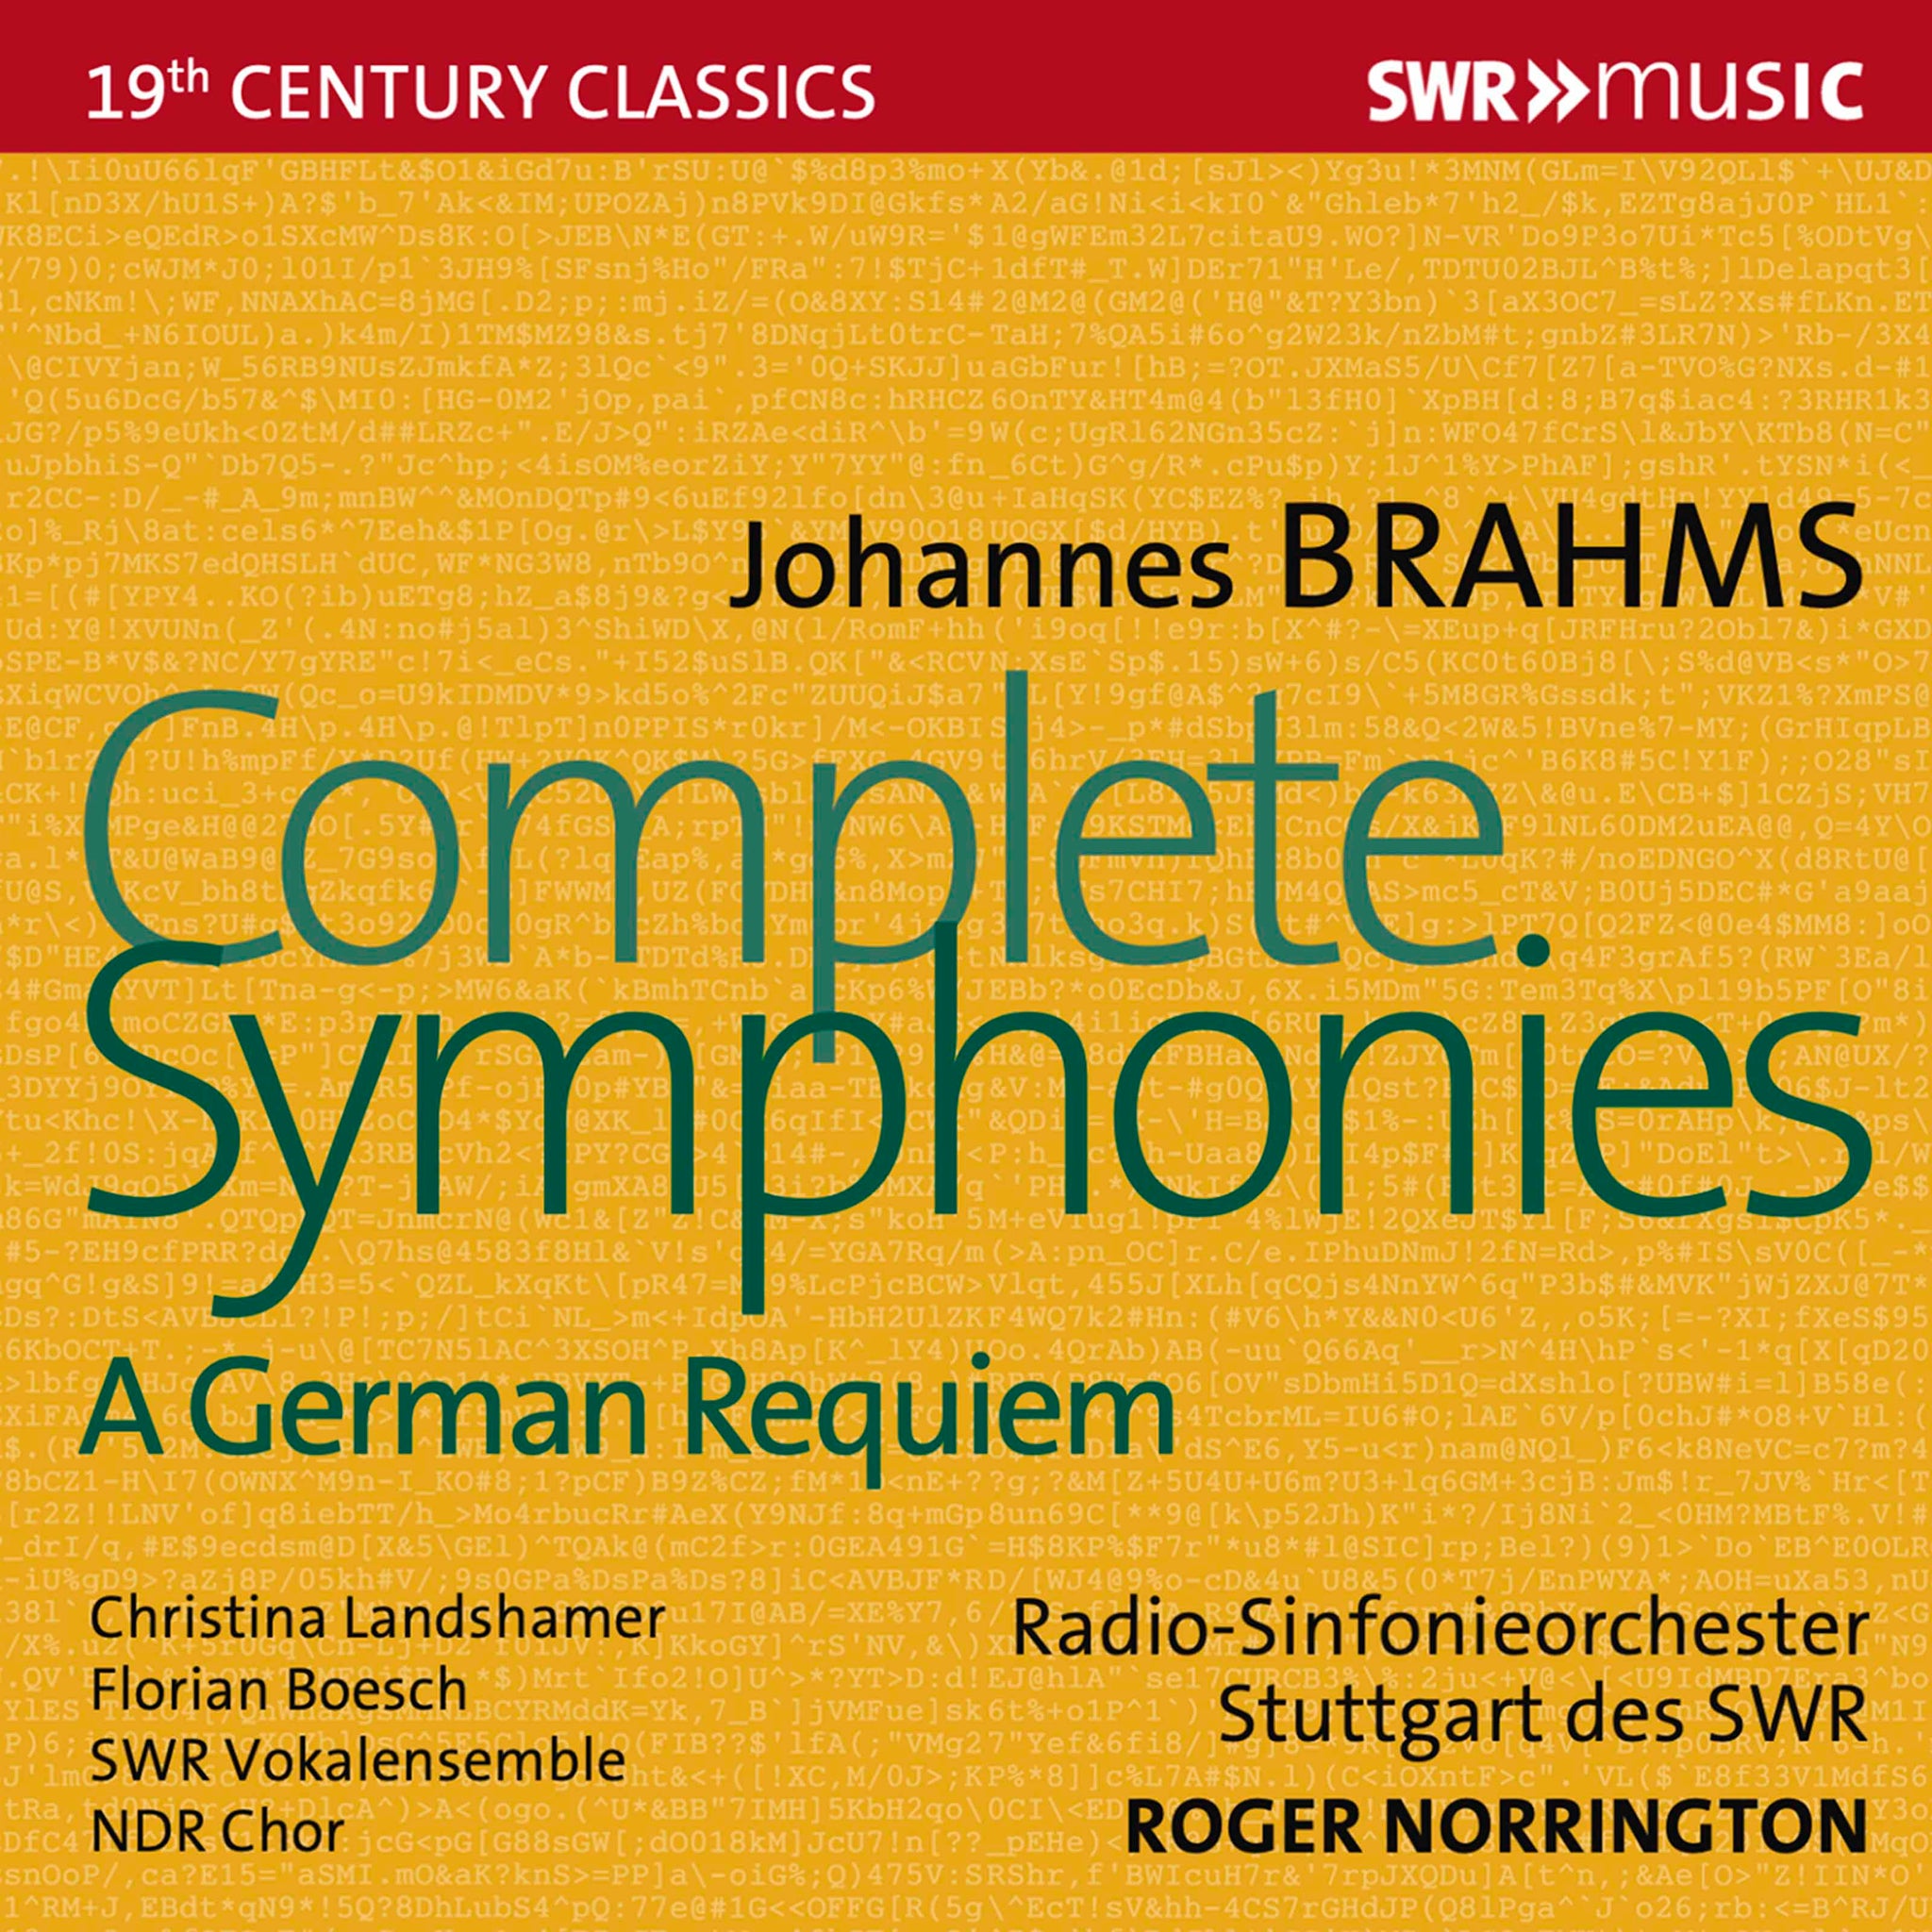 Brahms: Complete Symphonies - A German Requiem / Landshamer, Boesch, Norrington, Radio-Sinfonieorchester Stuttgart des SWR